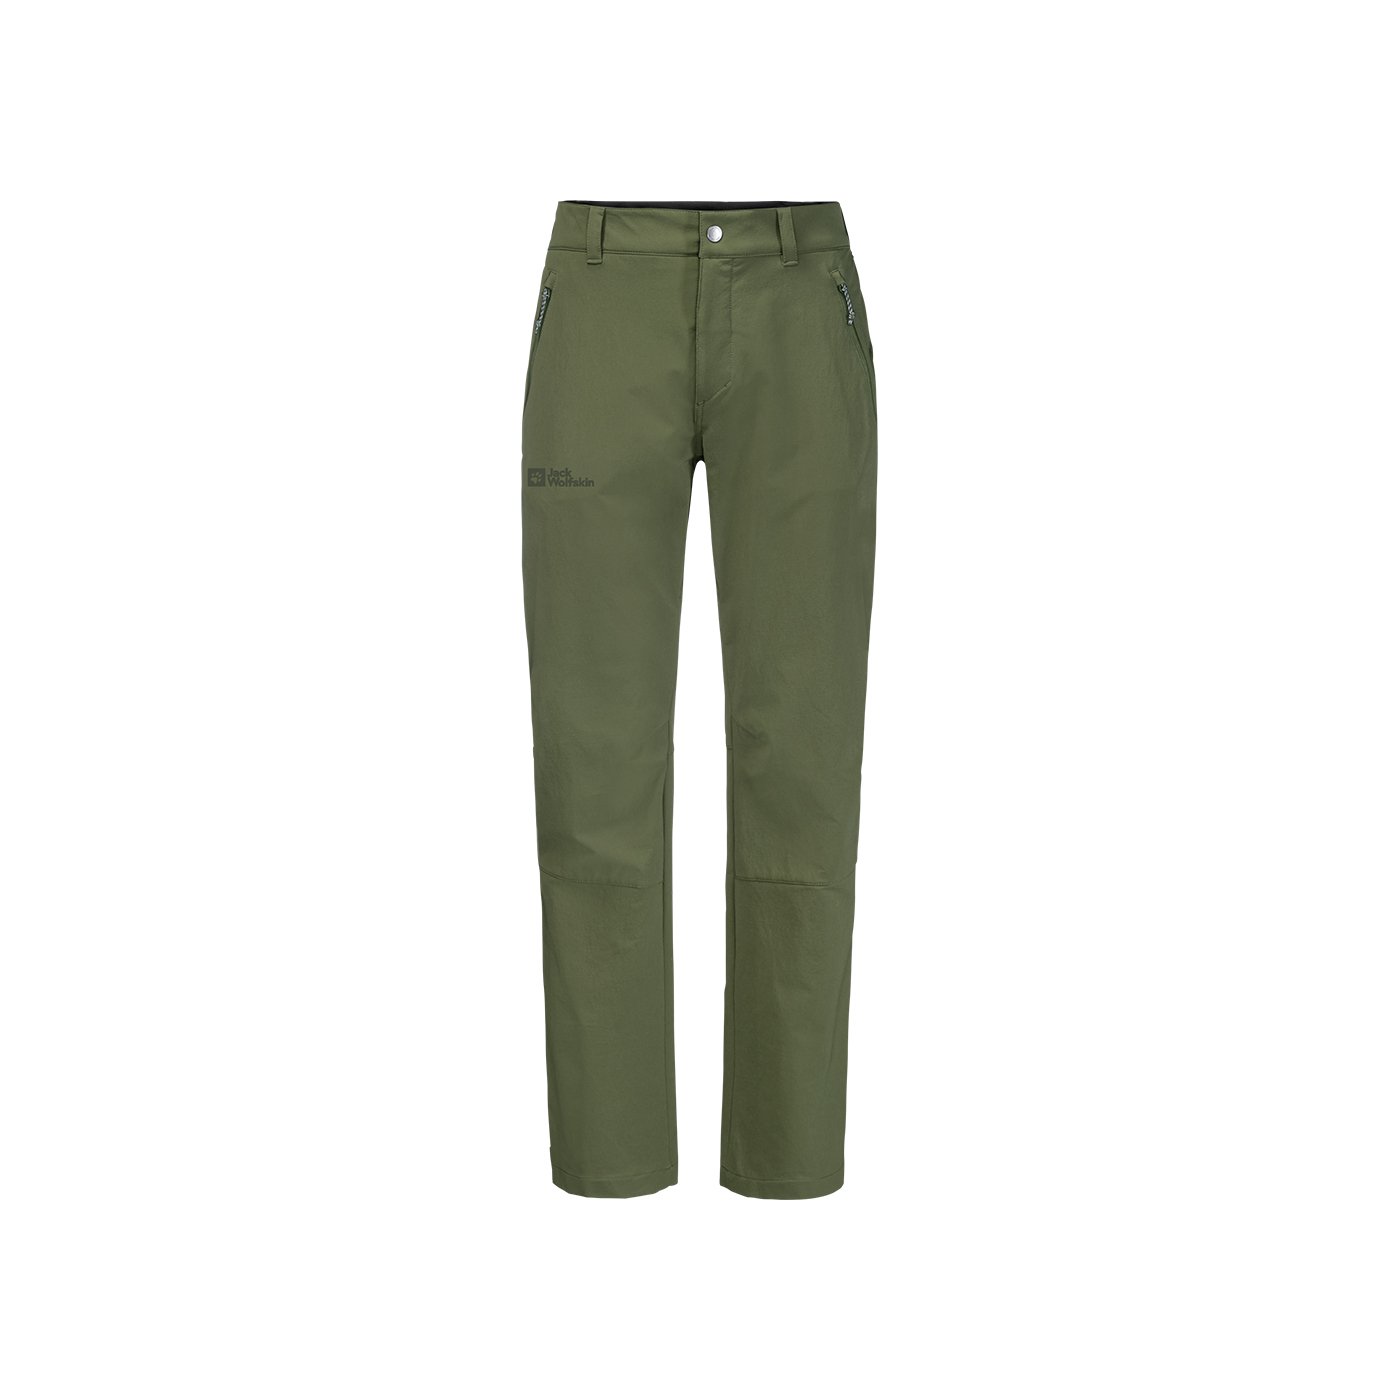 Jack Wolfskin Activate XT Erkek Outdoor Pantolon - Yeşil - 1